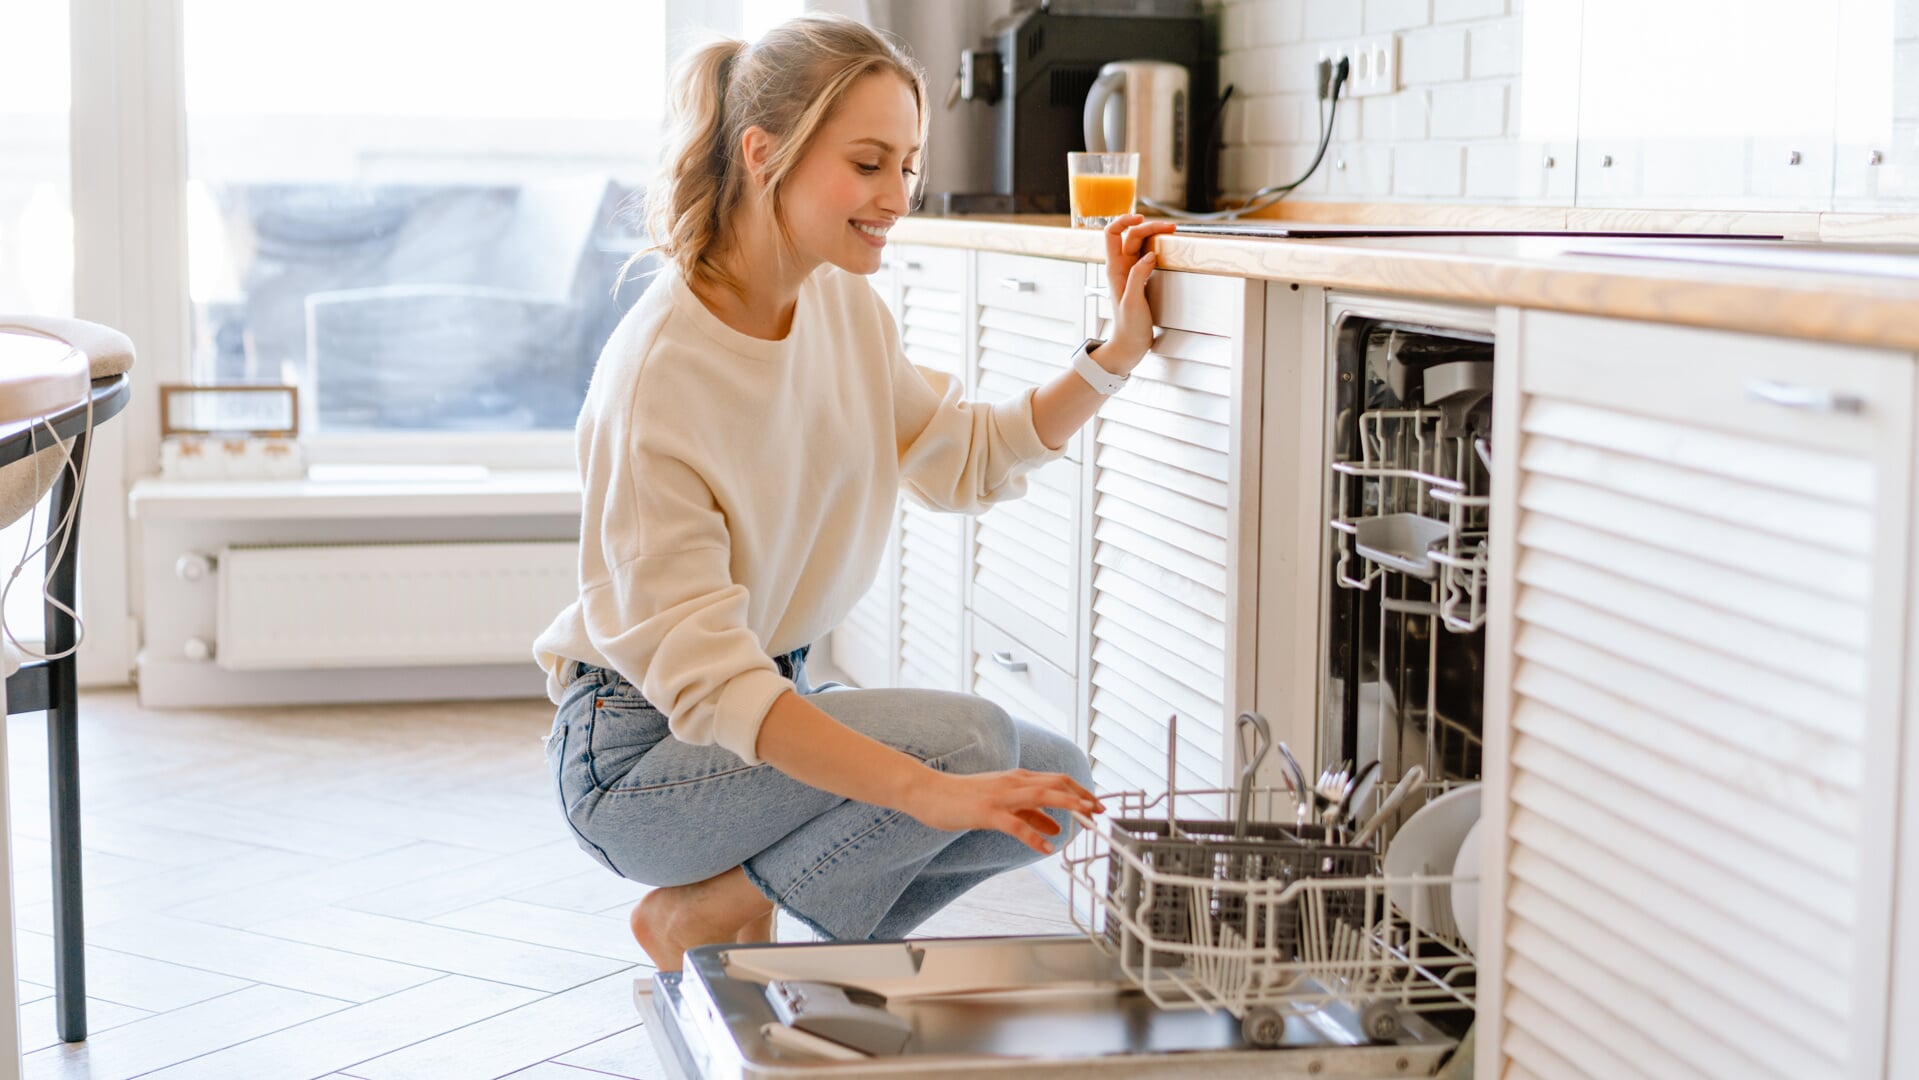 Om de vaat goed schoon te krijgen, moet je regelmatig de afwasmachine schoonmaken.